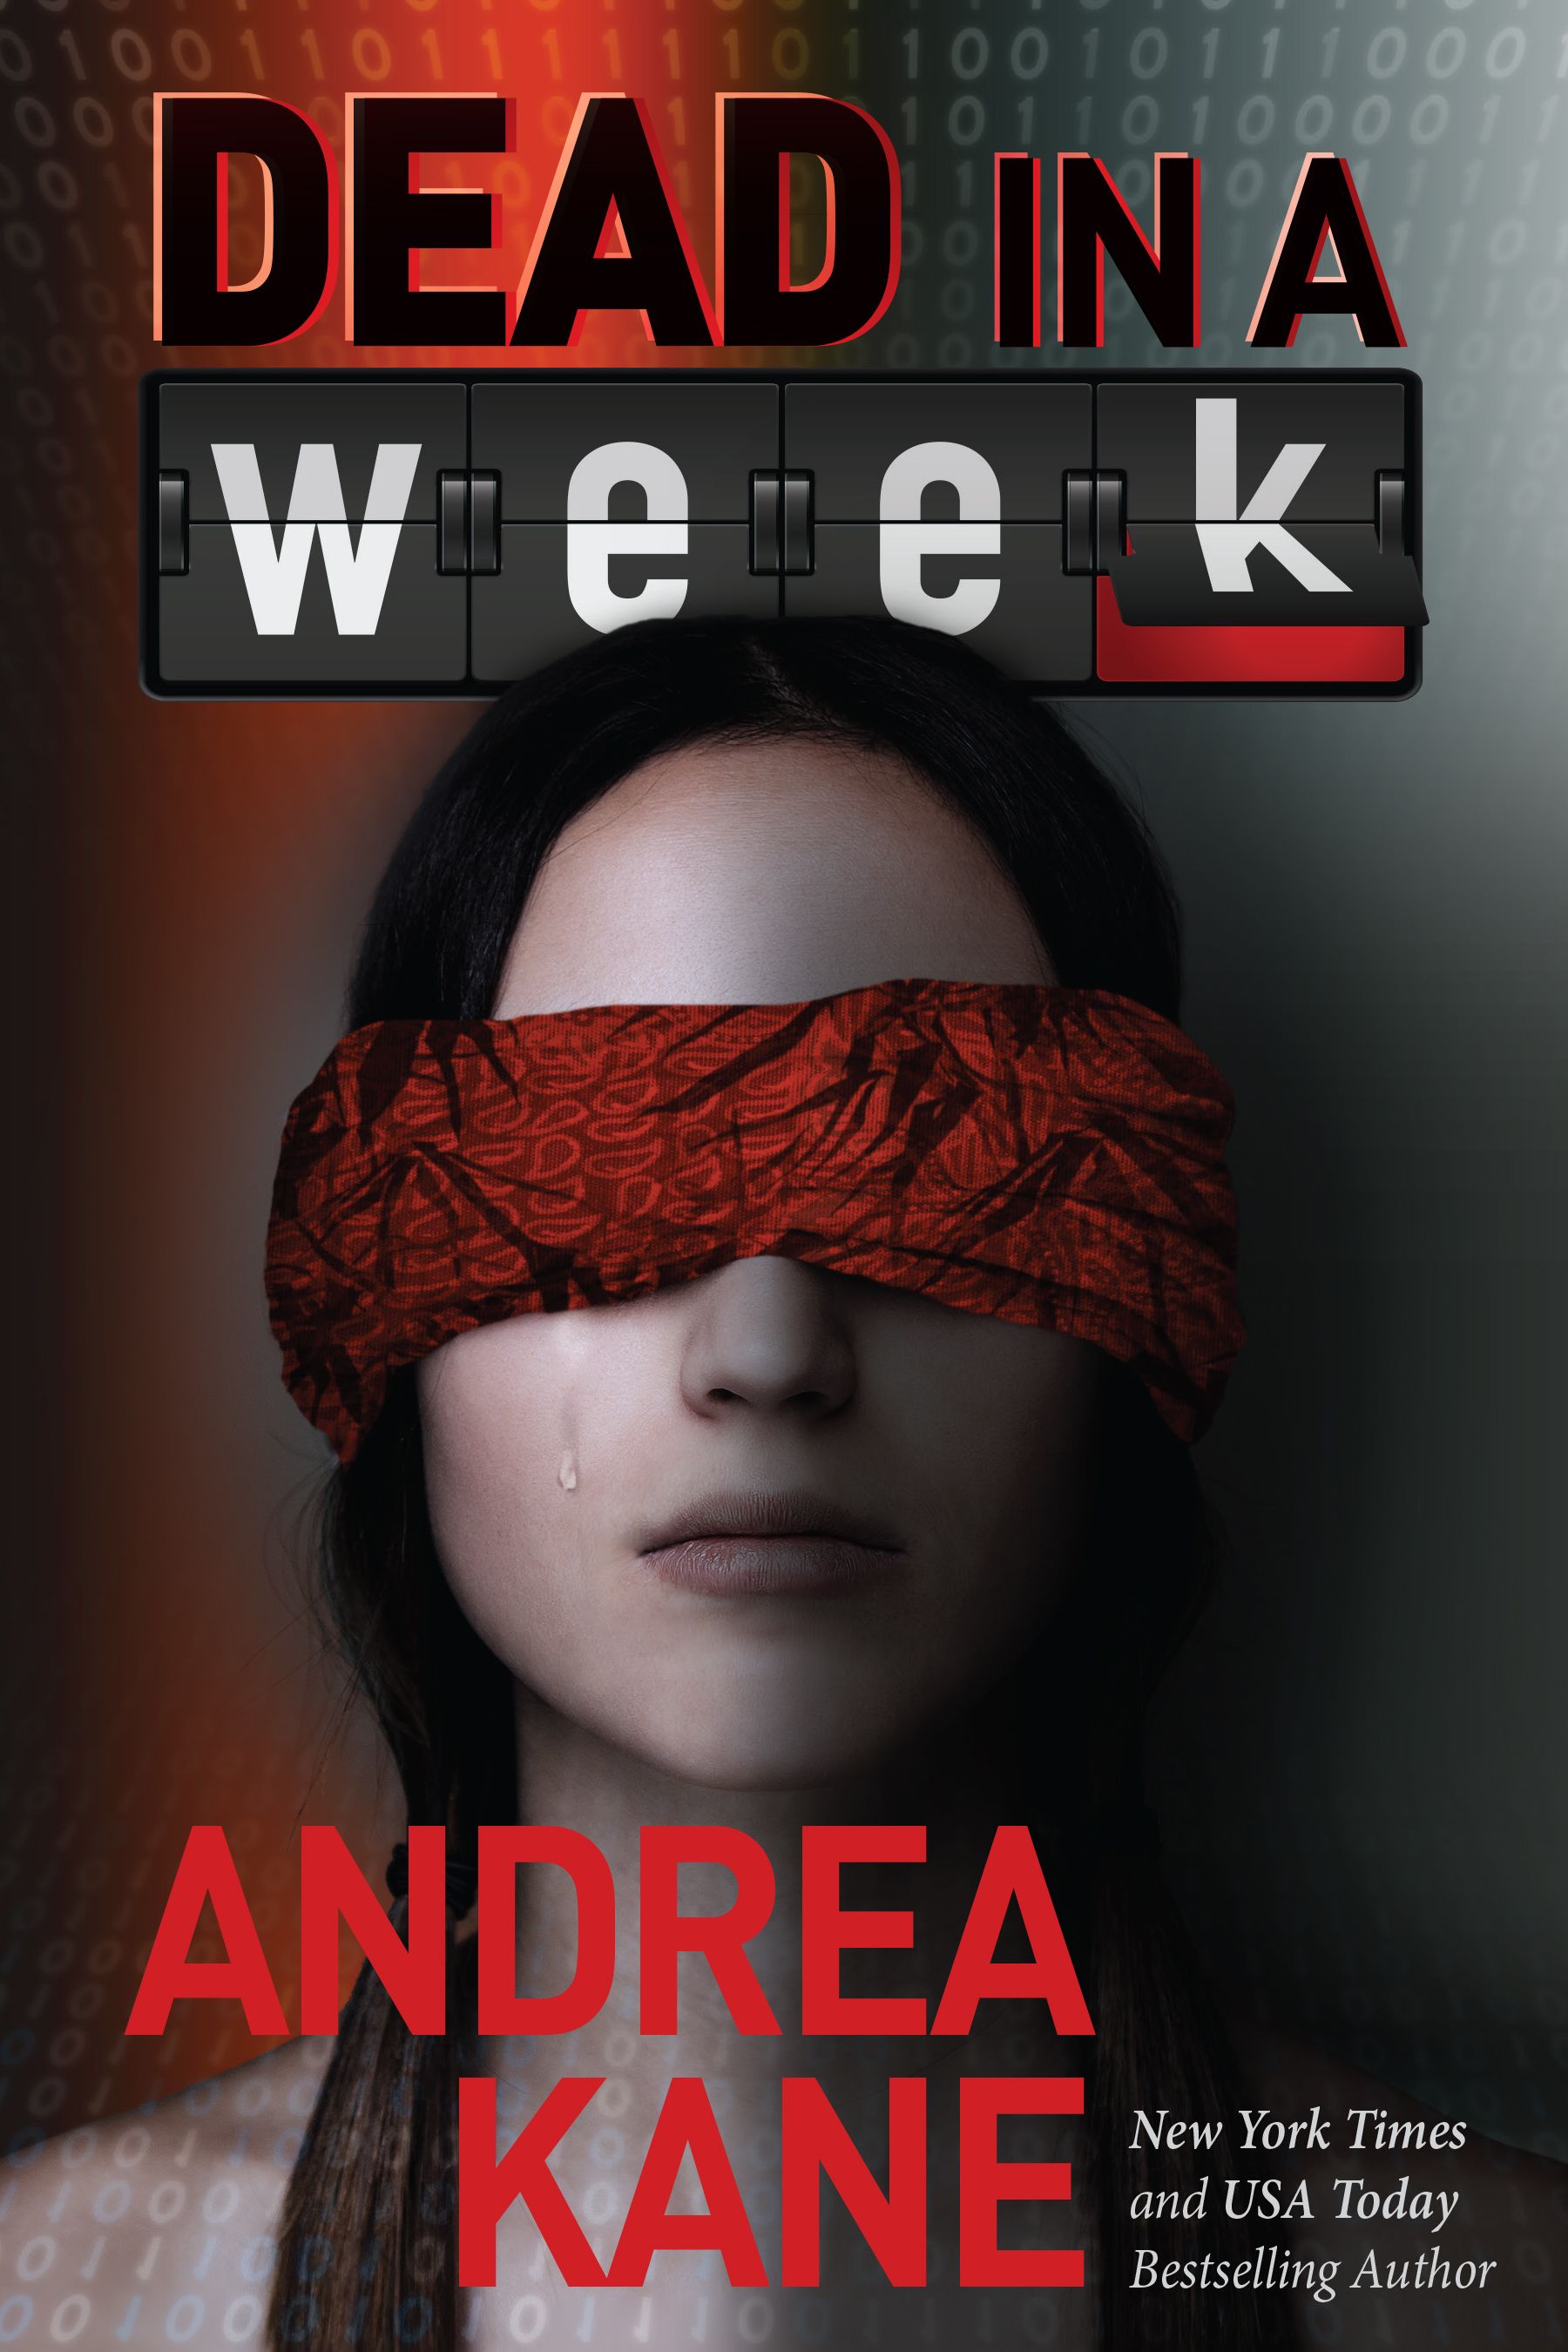 Dead In A Week by Andrea Kane